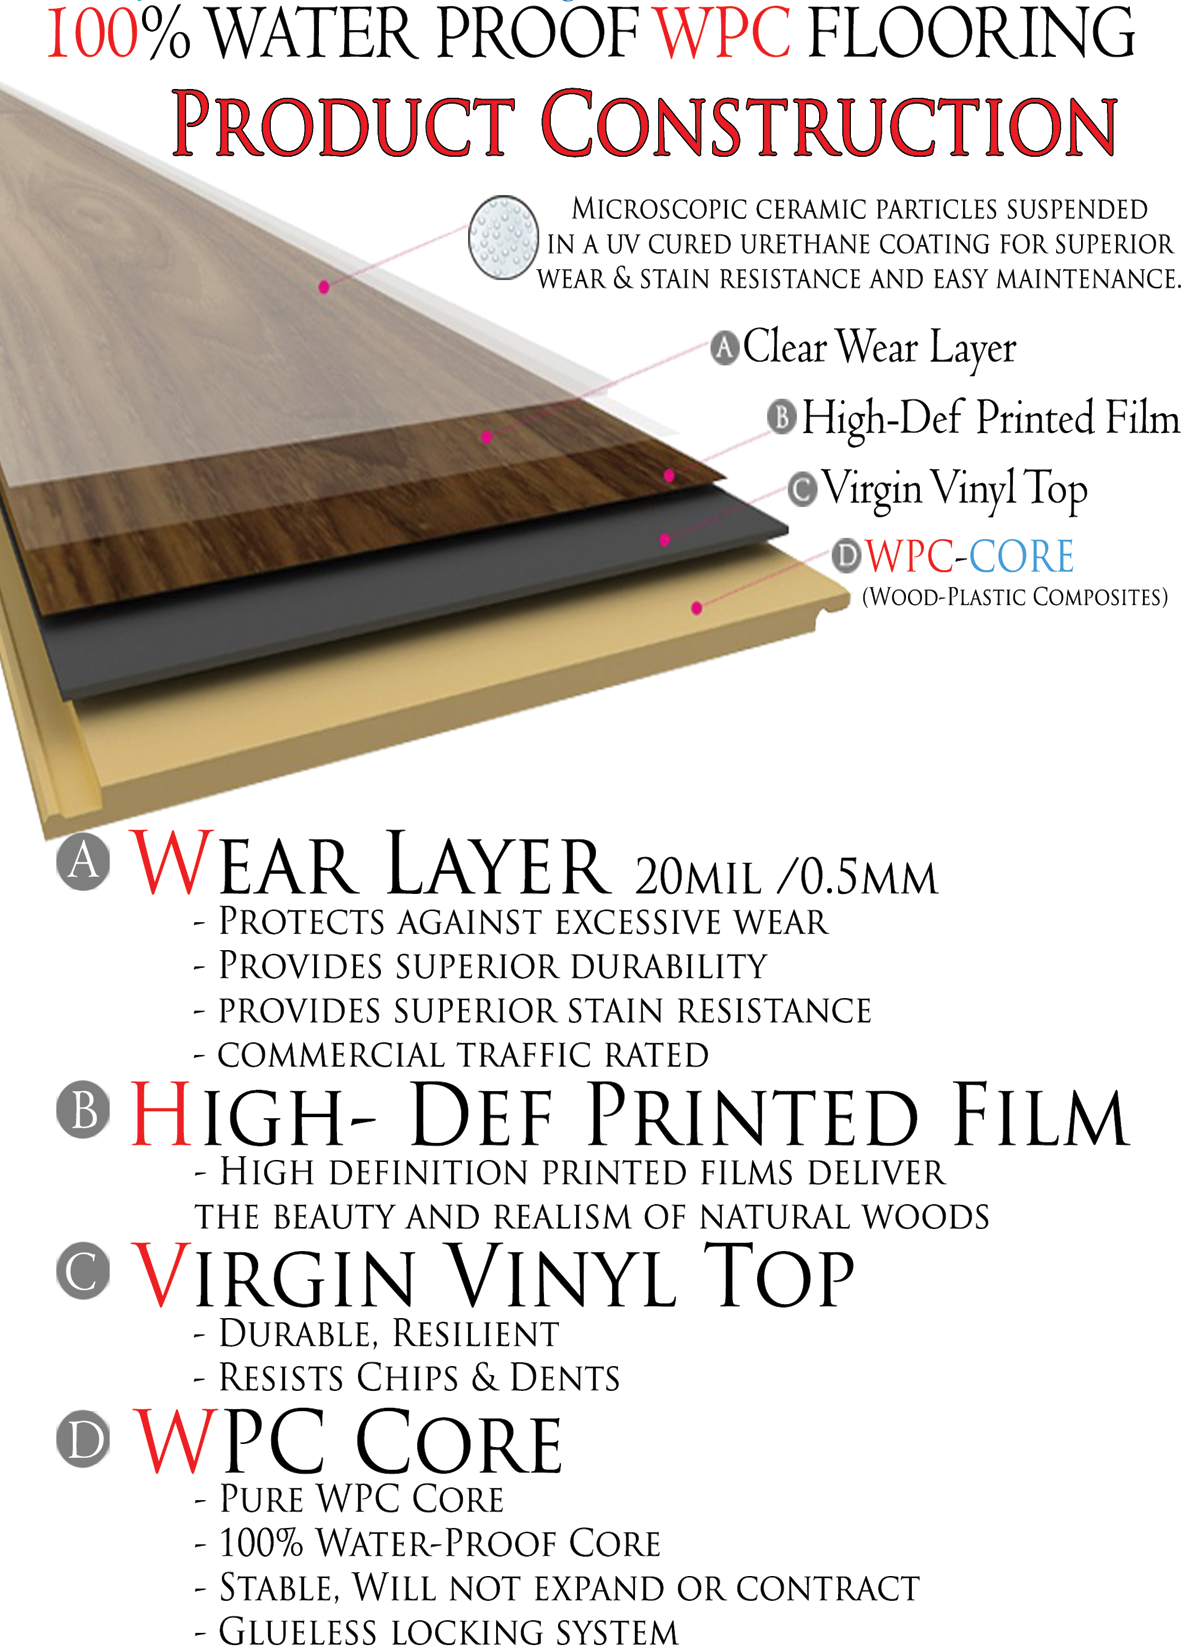 Wpc Flooring Parliament Floors Inc, Wpc Luxury Vinyl Flooring